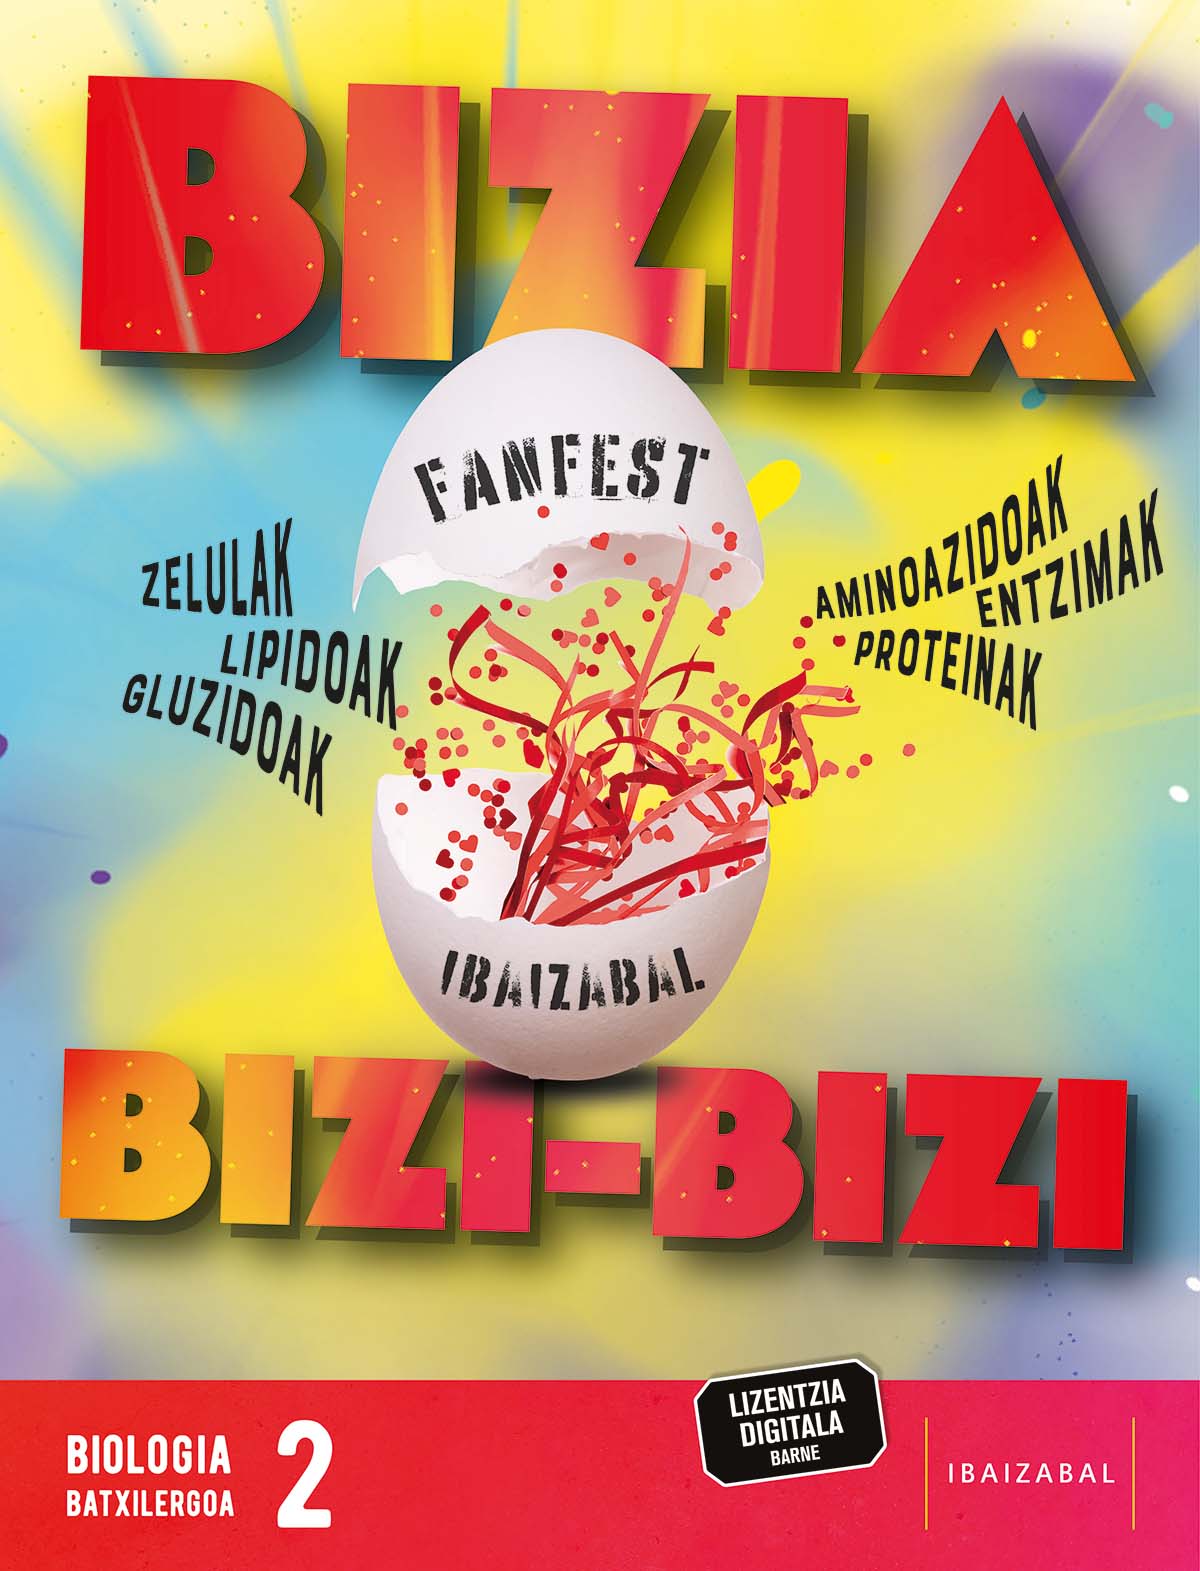 FanFest Ibaizabal